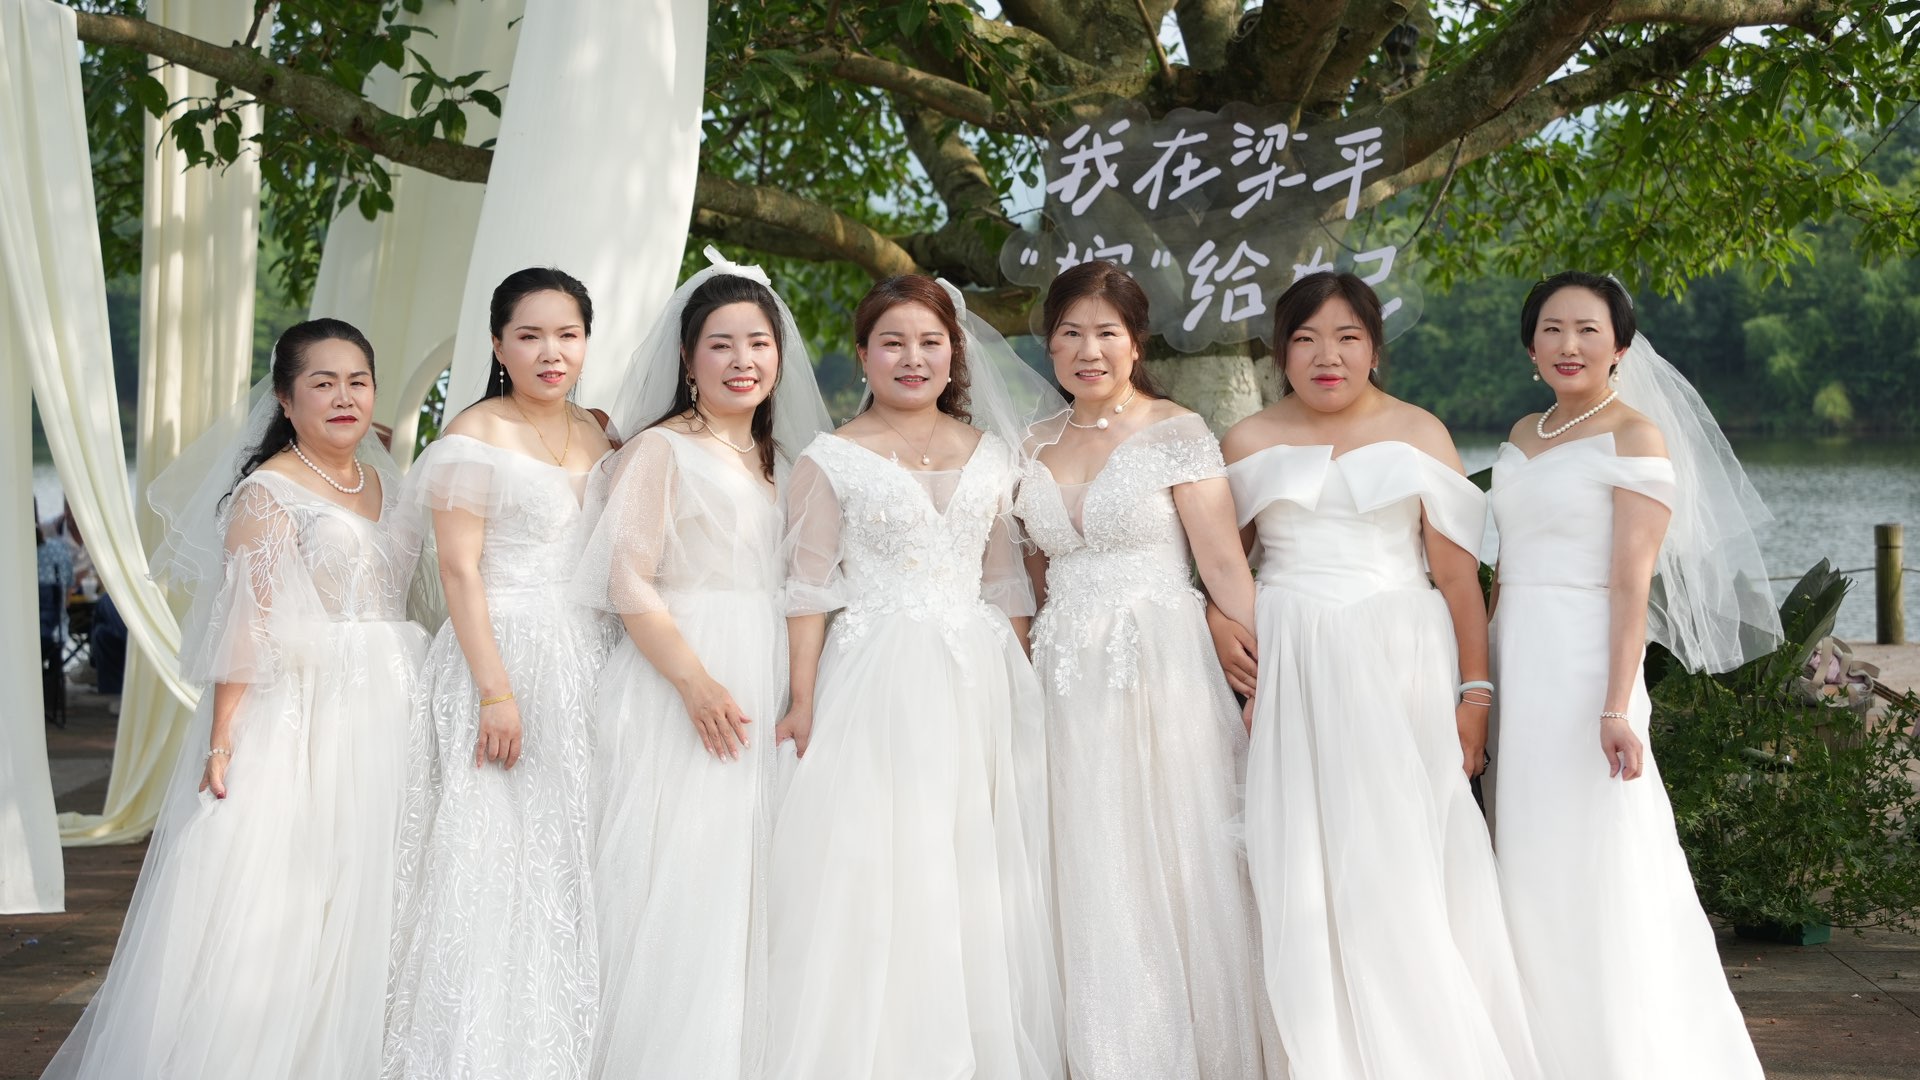 梁平双桂湖今天有20个人结婚